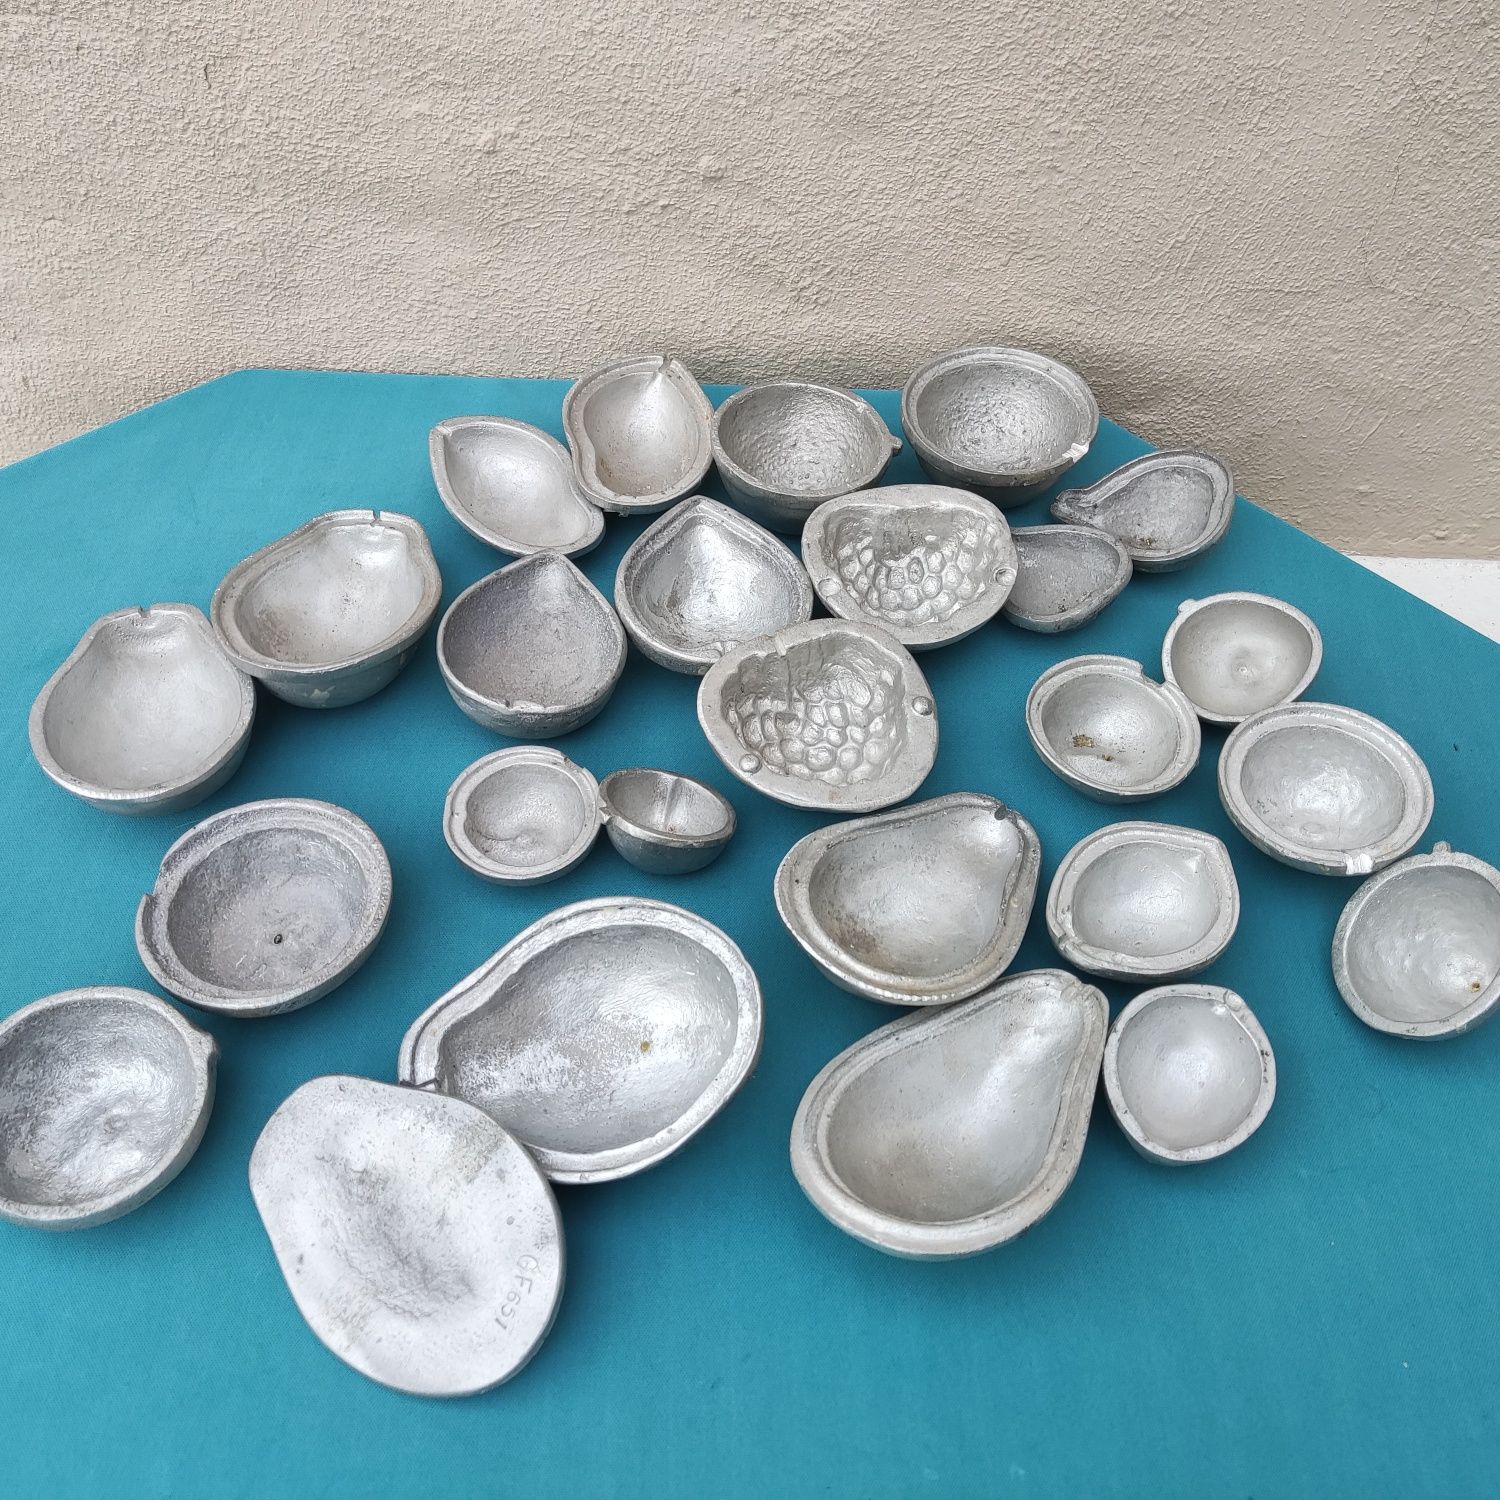 13 moldes em forma de fruta feitos em alumínio - antigo, vintage